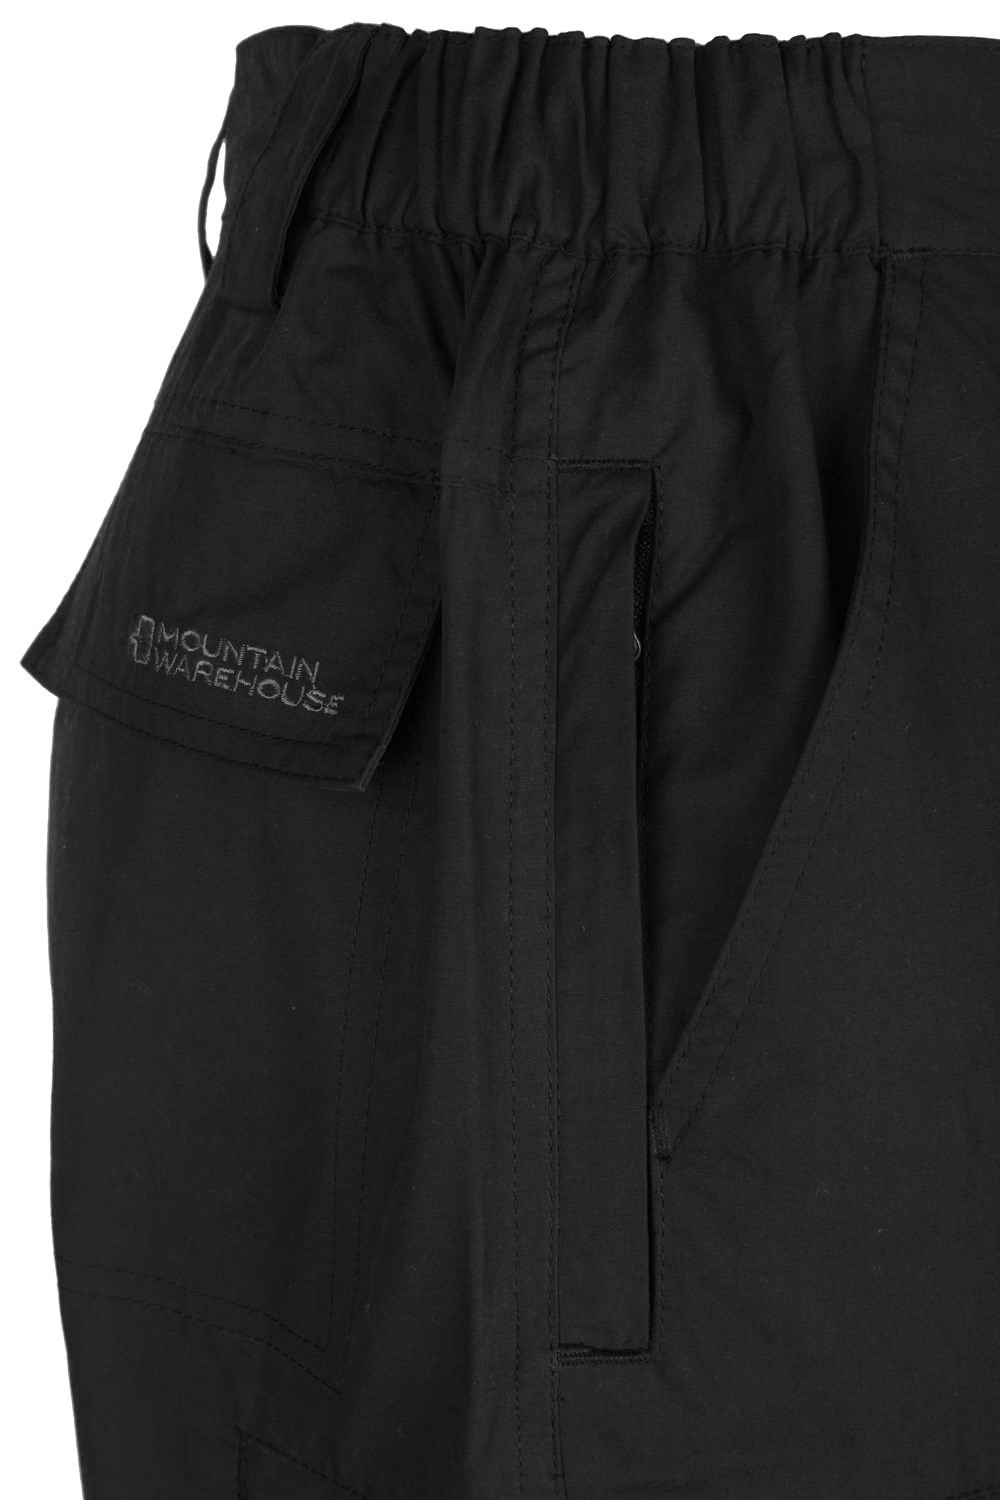 Mountain Warehouse Trek Mens Short Length Trousers | eBay